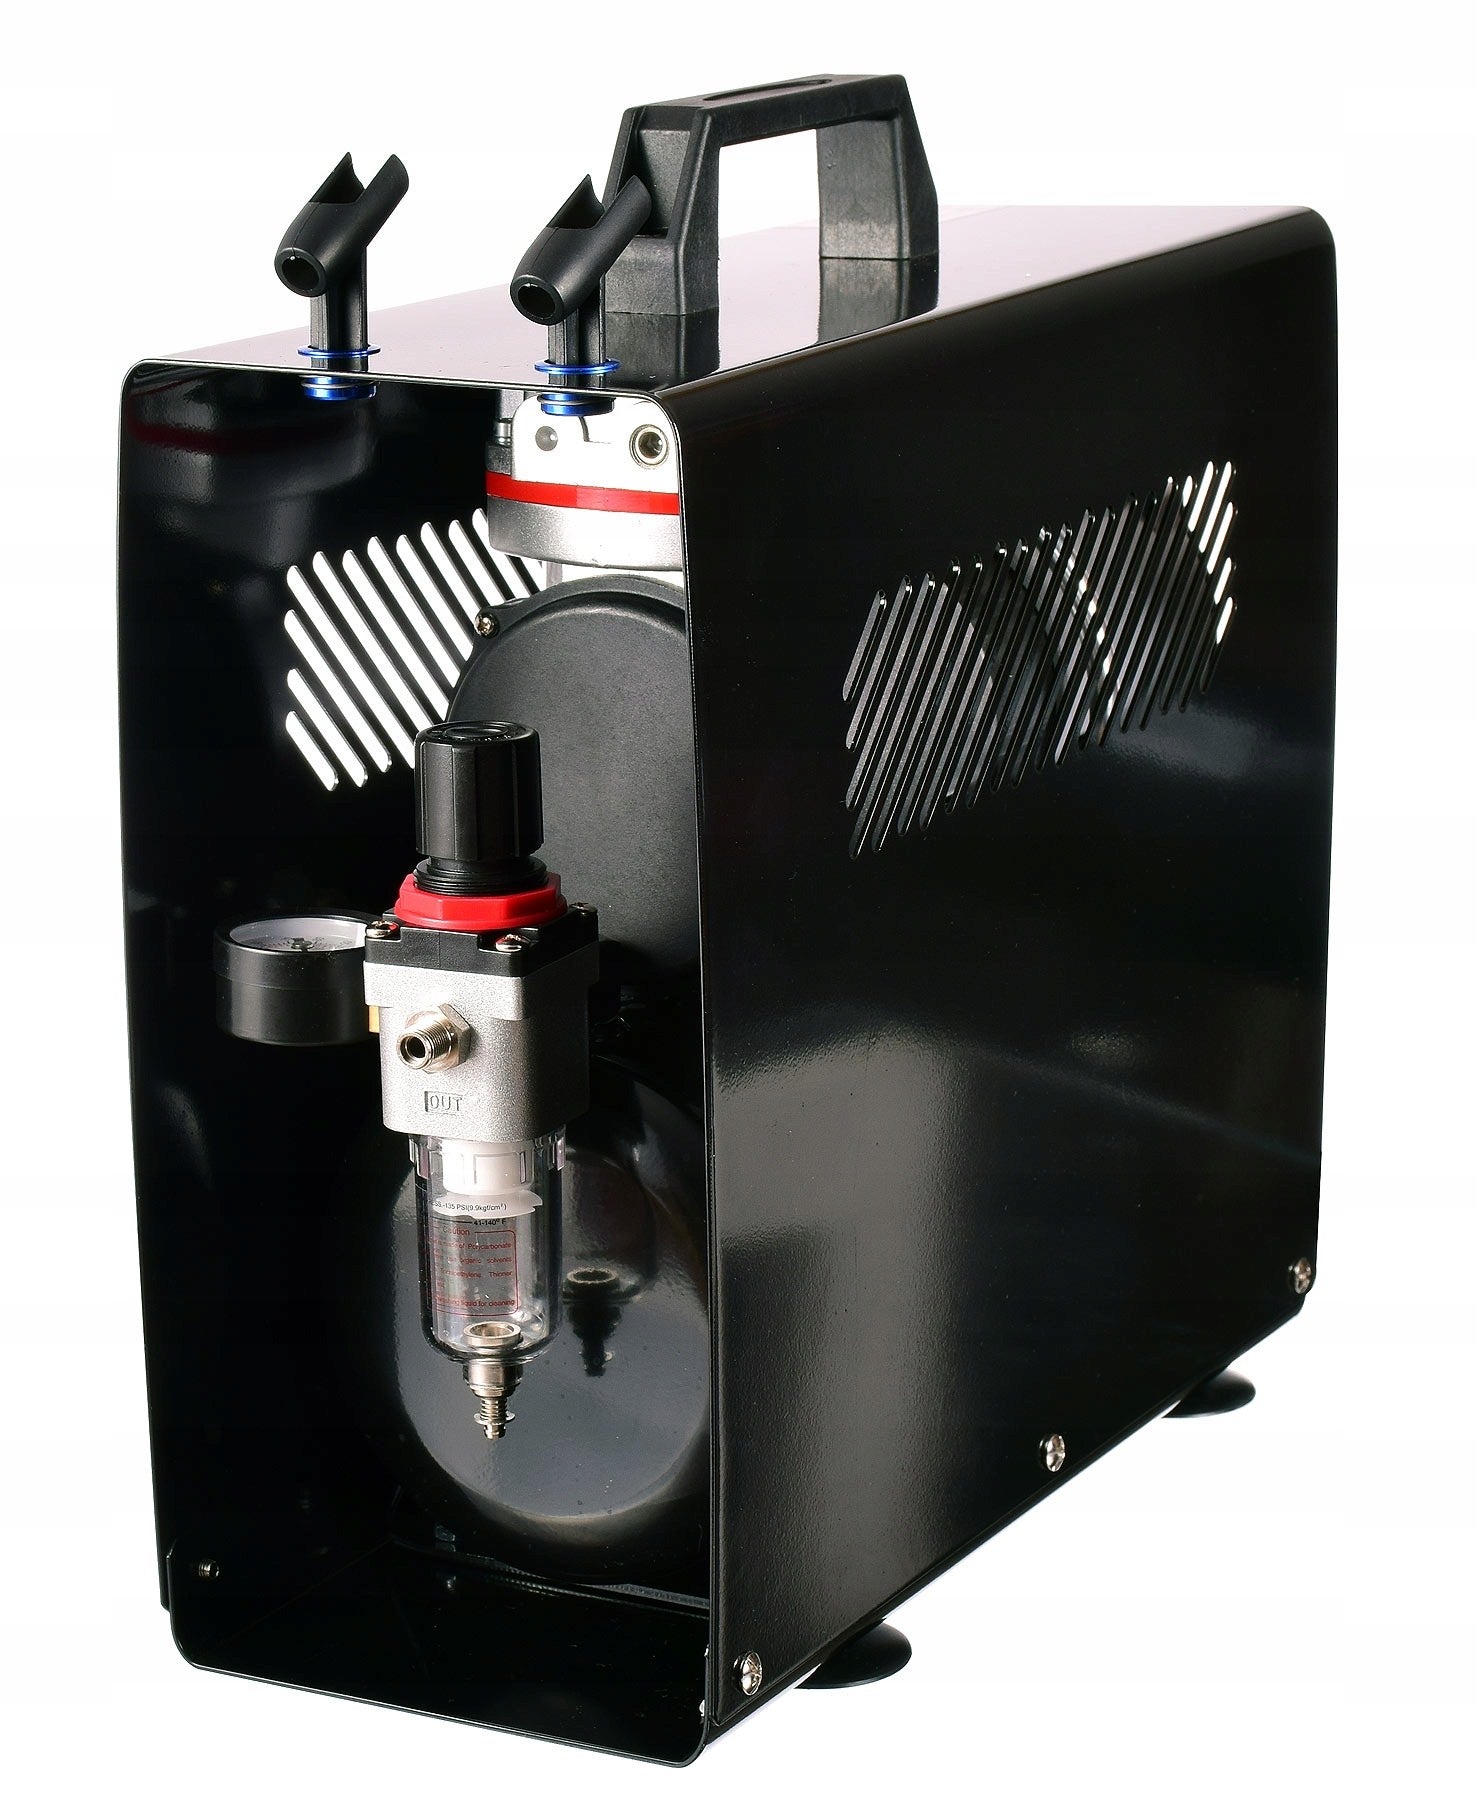 Airbrush kompresor AS-196A, až 6 barů, Dvouválcový, 40l/min, 3l nádrž, Vstup 1/8", s krytem